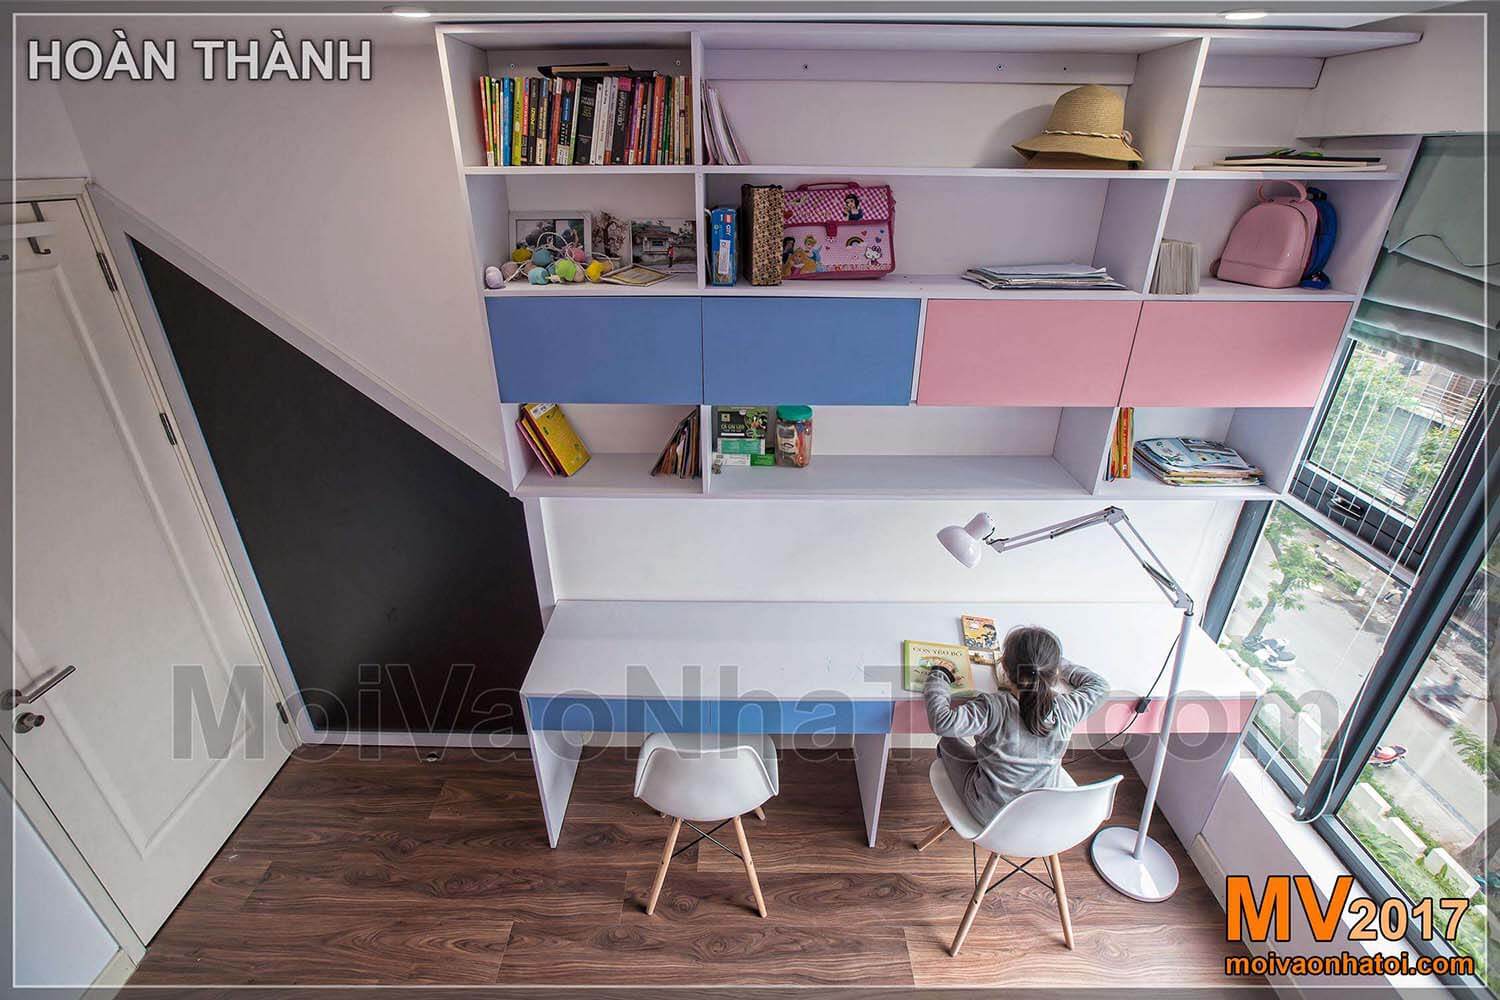 ピンクの子供の教室のデザイン